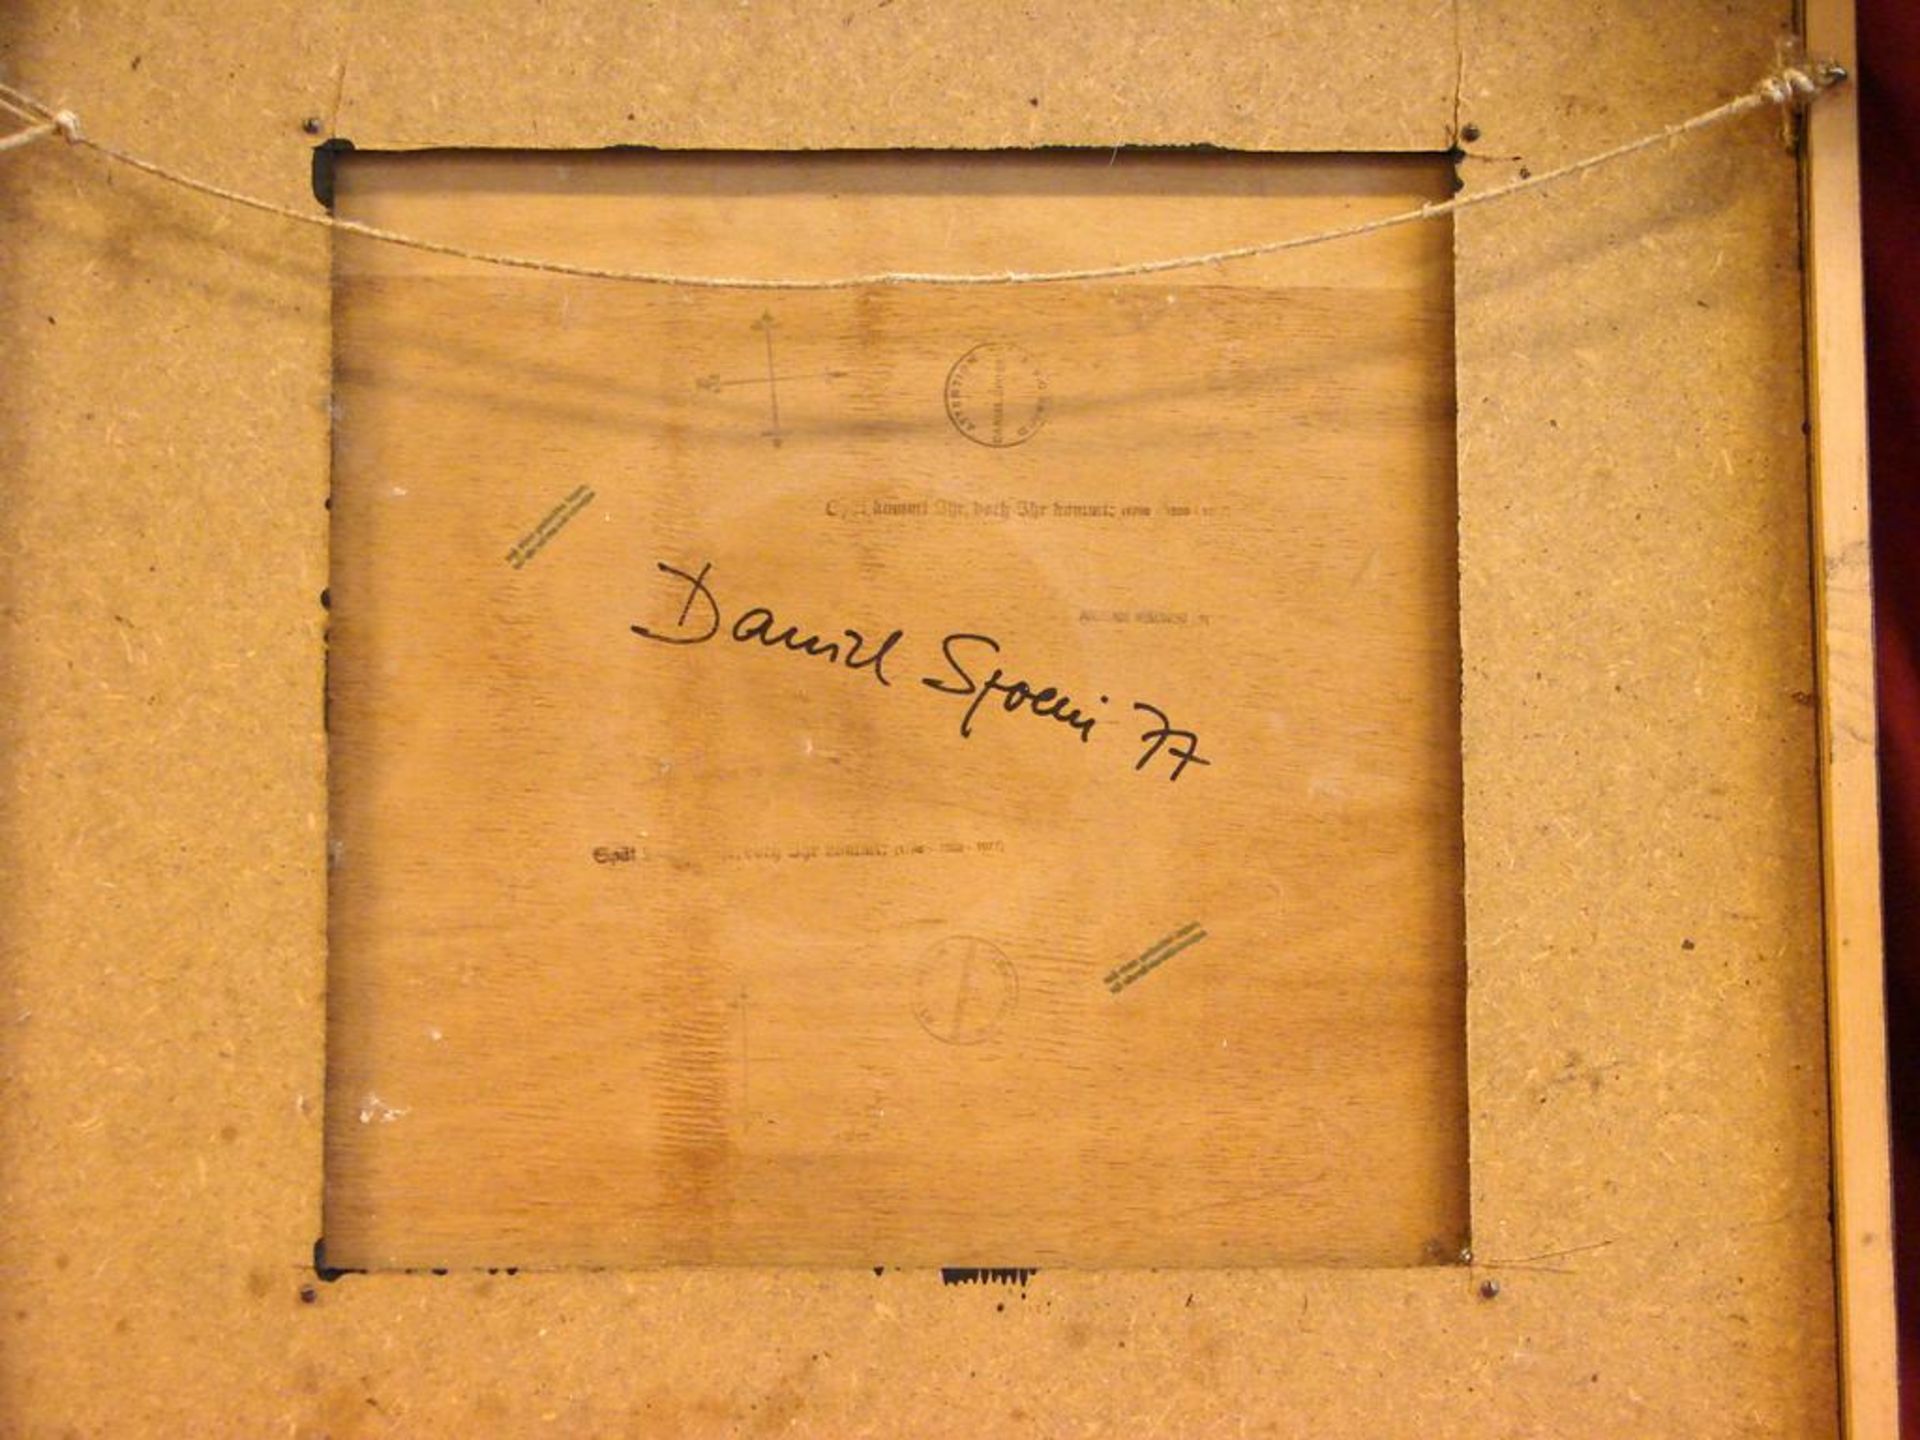 DANIEL SPOERI, Modern, Textilarbeit, dat.' 77 , bezeichnet, ca. 65x65 cm, Kein Postversand möglich - Bild 3 aus 3